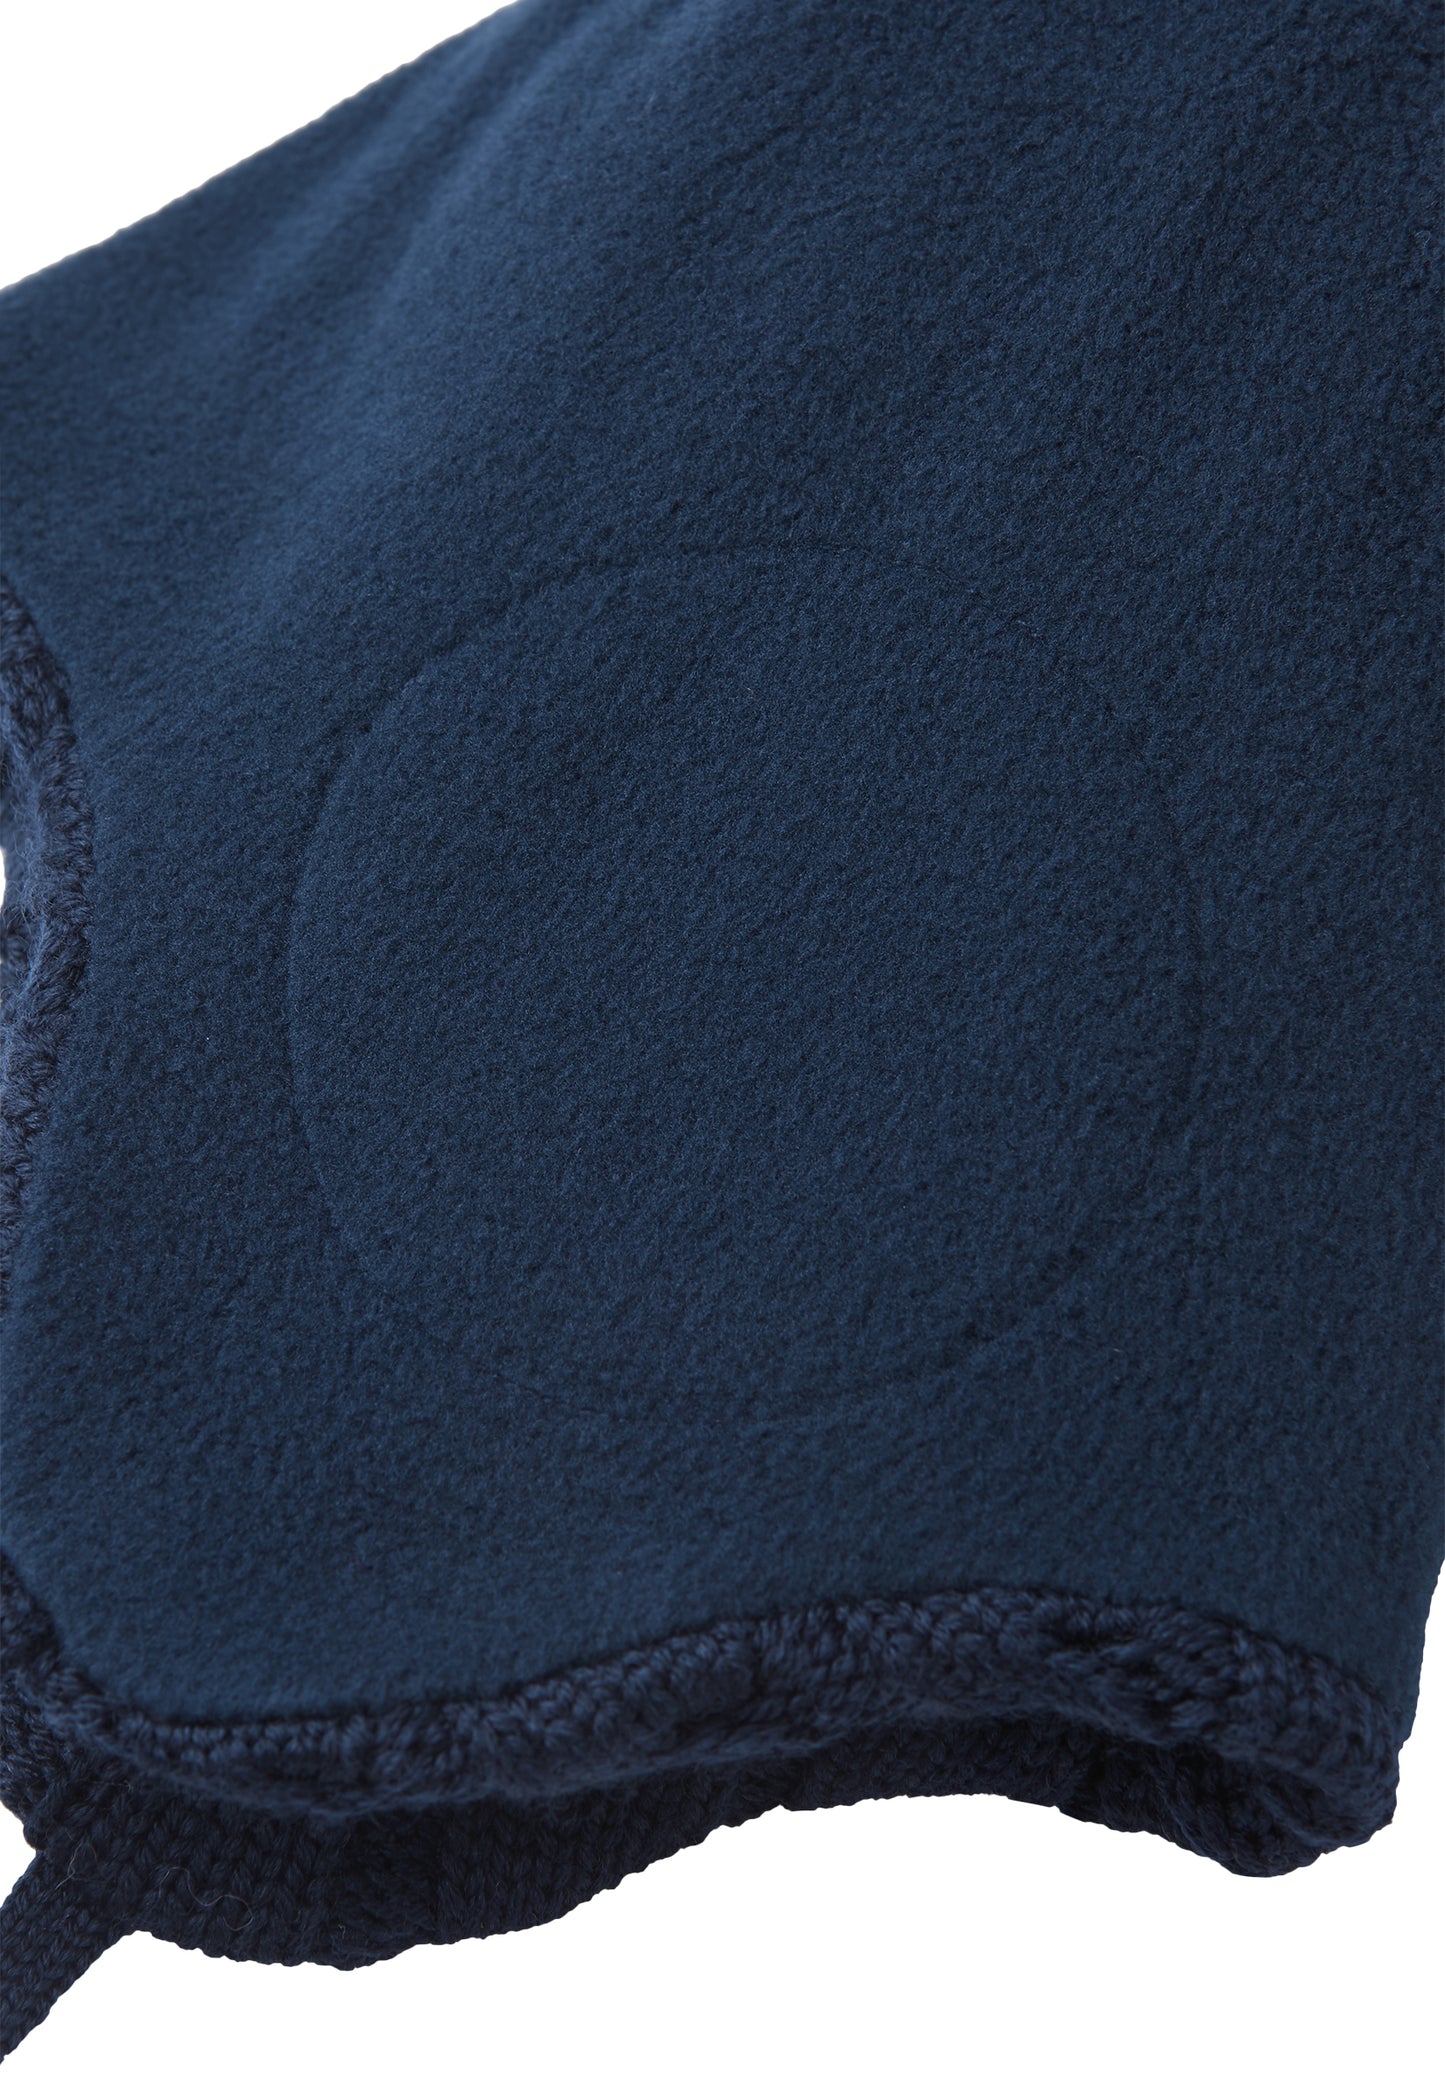 Reima Mütze mit Bändel <br>Nunavut <br>Gr. 46 bis 52 <br>innen hautfreundliches Fleece<br> aussen warme, wasserabweisende Merino-Wolle<br> Windstopper-Membrane im Ohrbereich